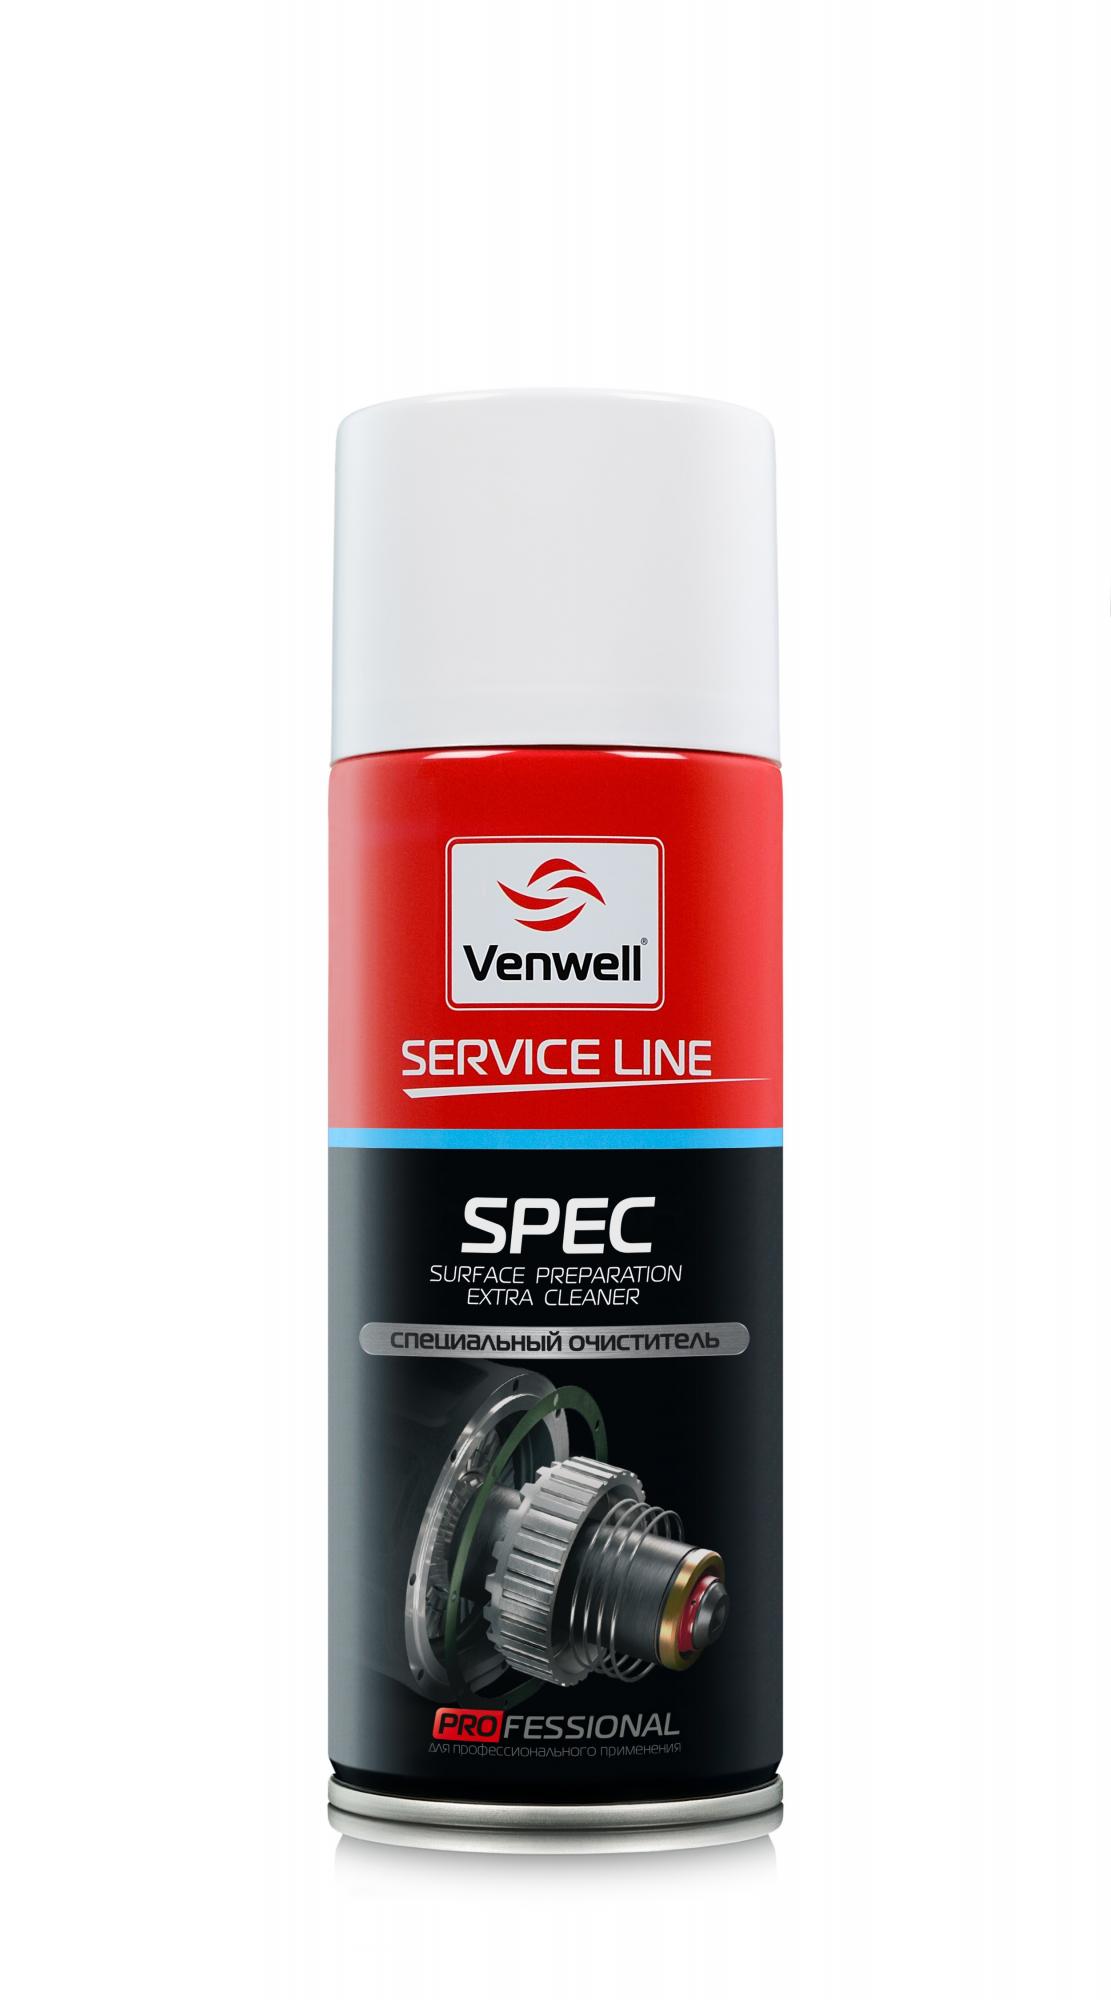 Специальный очиститель SPEC 400 мл, Venwell 